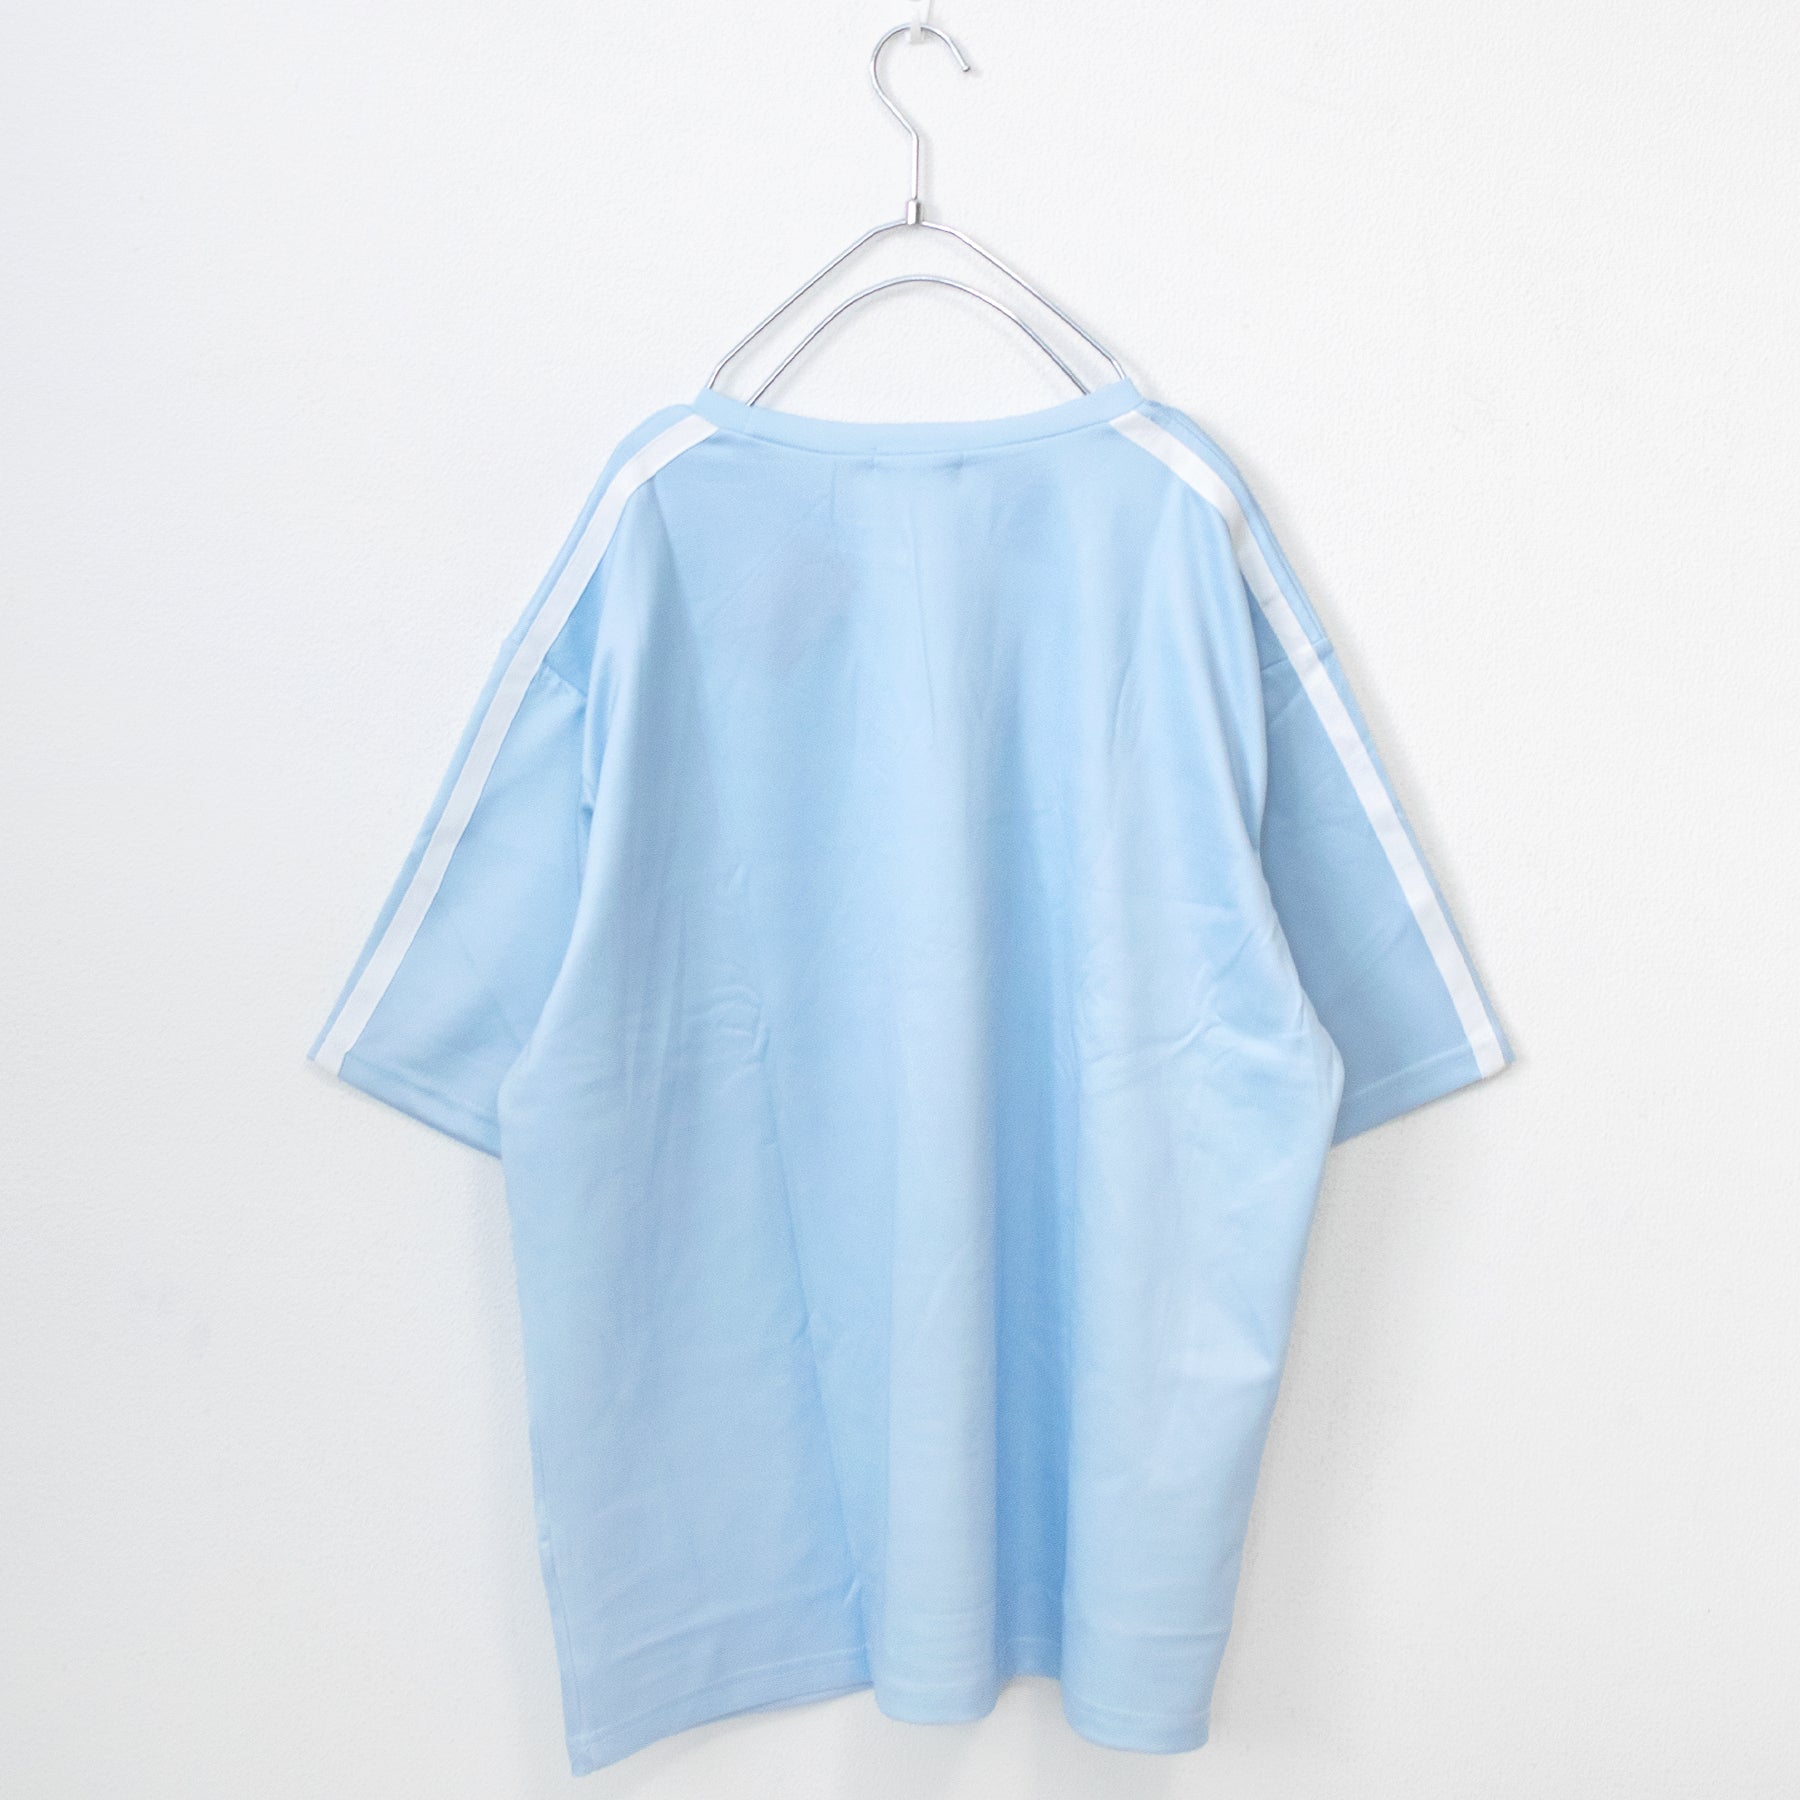 ACDC RAG Dot Neko Short Sleeve T-shirt Pastel Blue - YOUAREMYPOISON